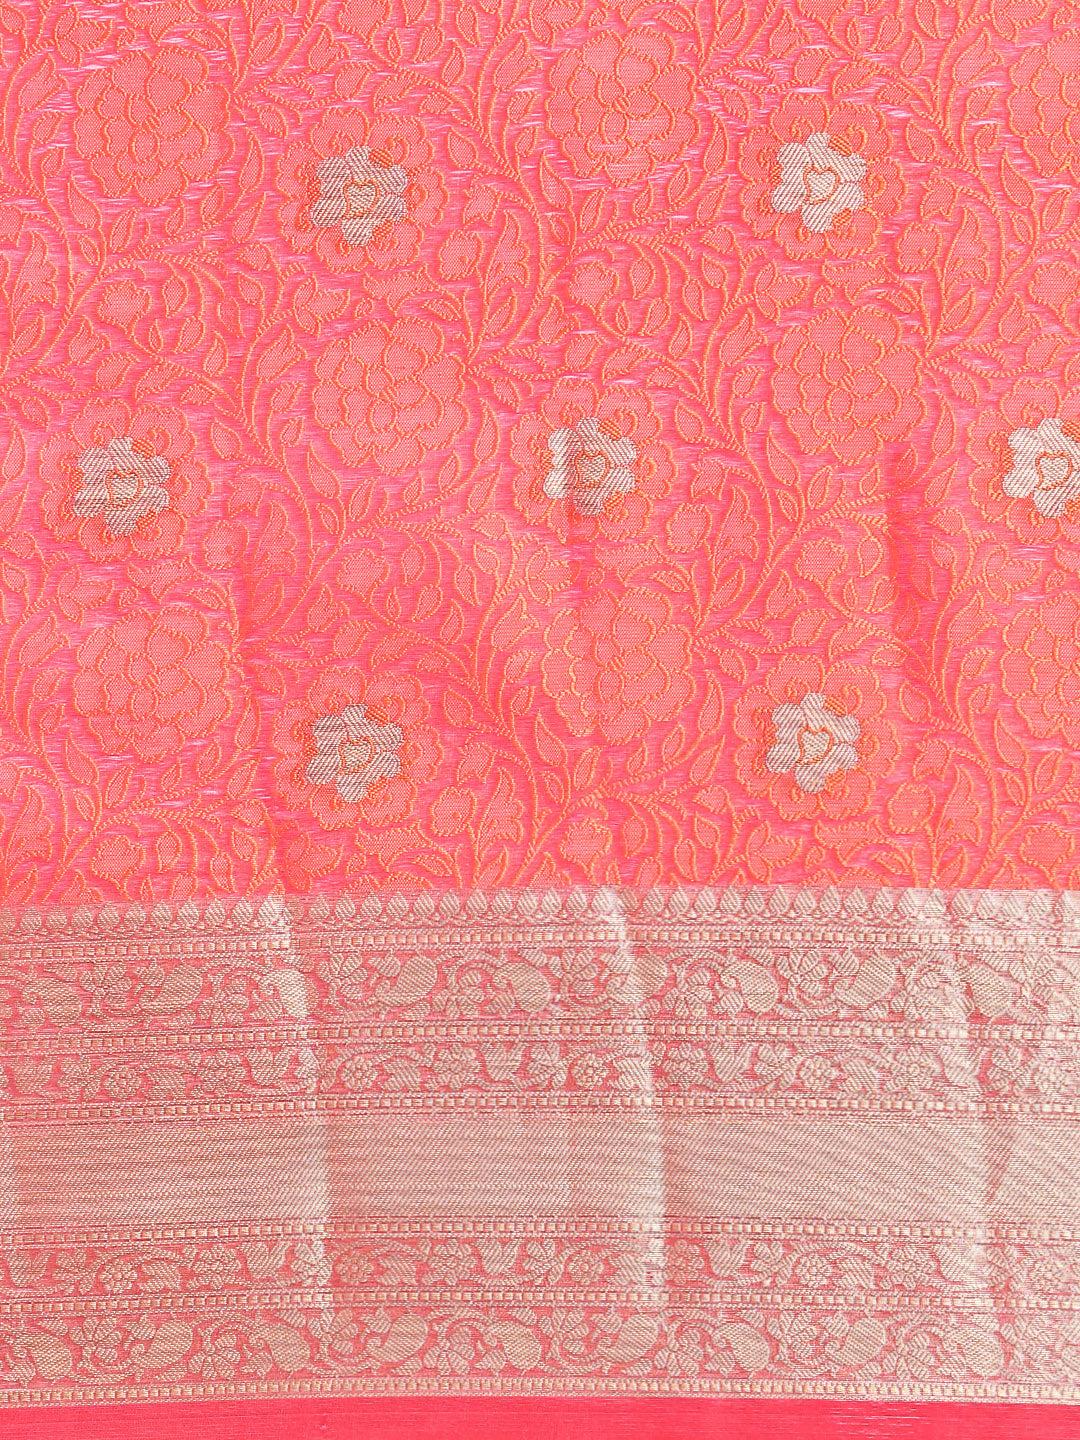 Semi Kora Cotton Allover Design Saree Dark Pink & Orange with Zari Border SKCW02-Pattern view